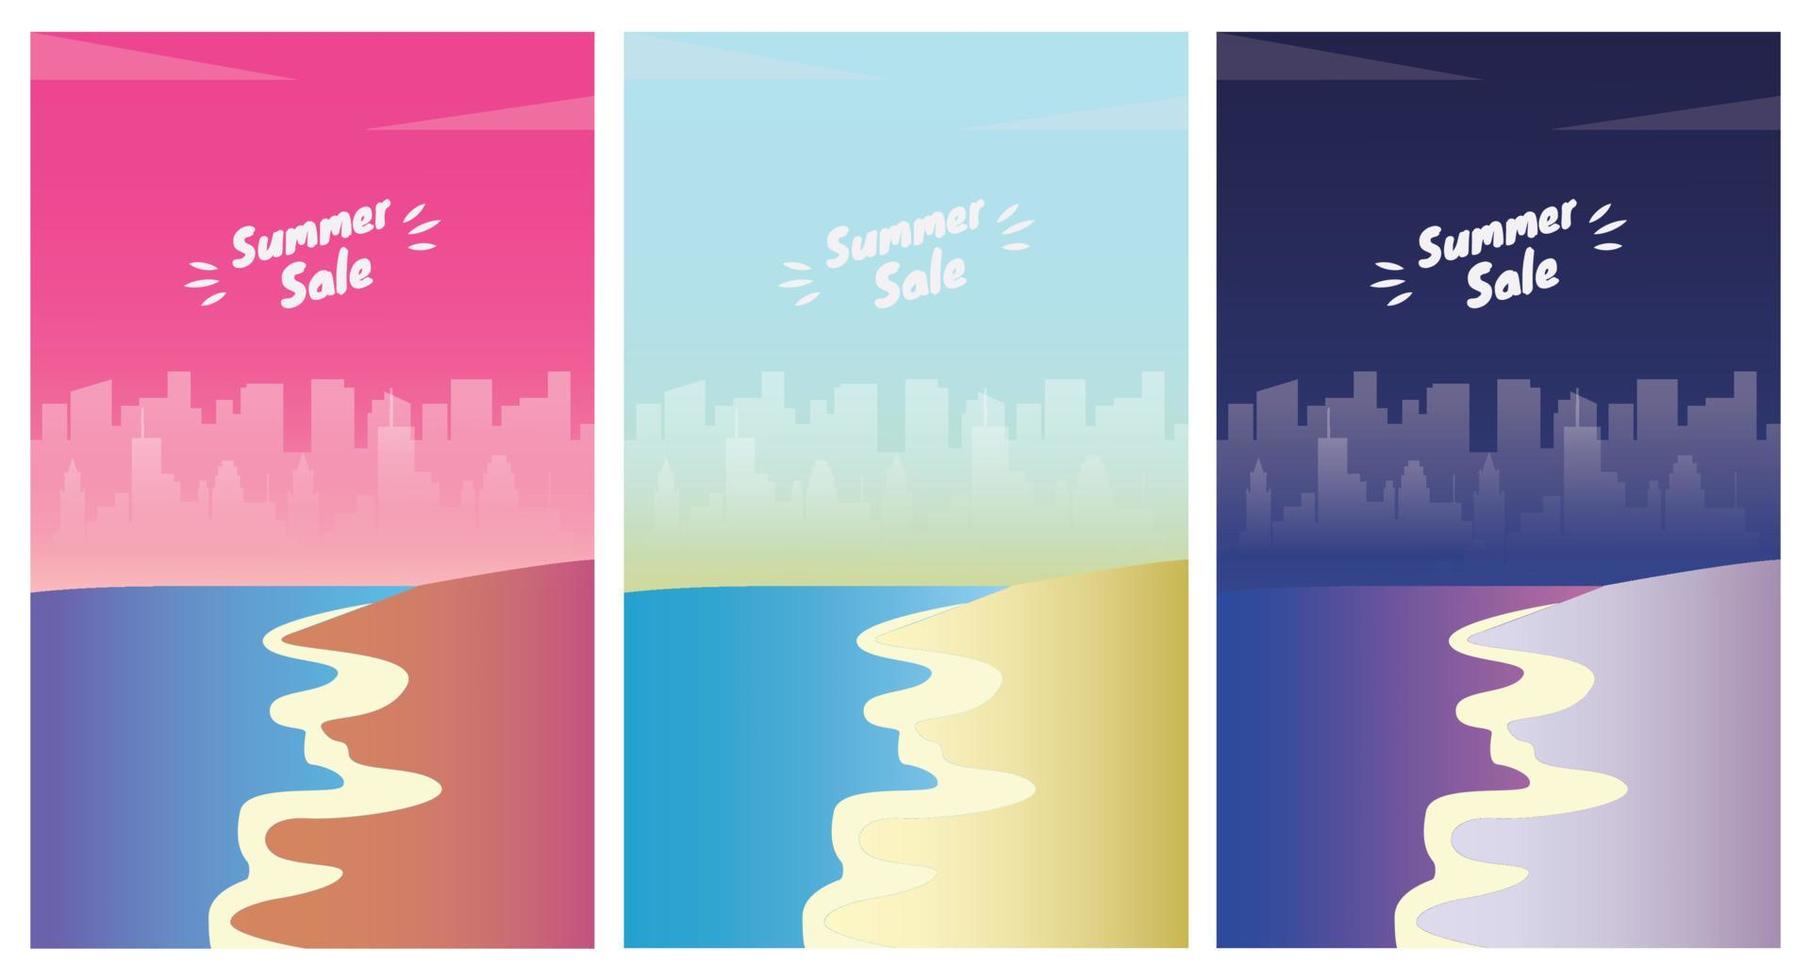 estate spiaggia paesaggio a Alba, tramonto e notte. estate vendita stagione banner impostato modello vettore illustrazione